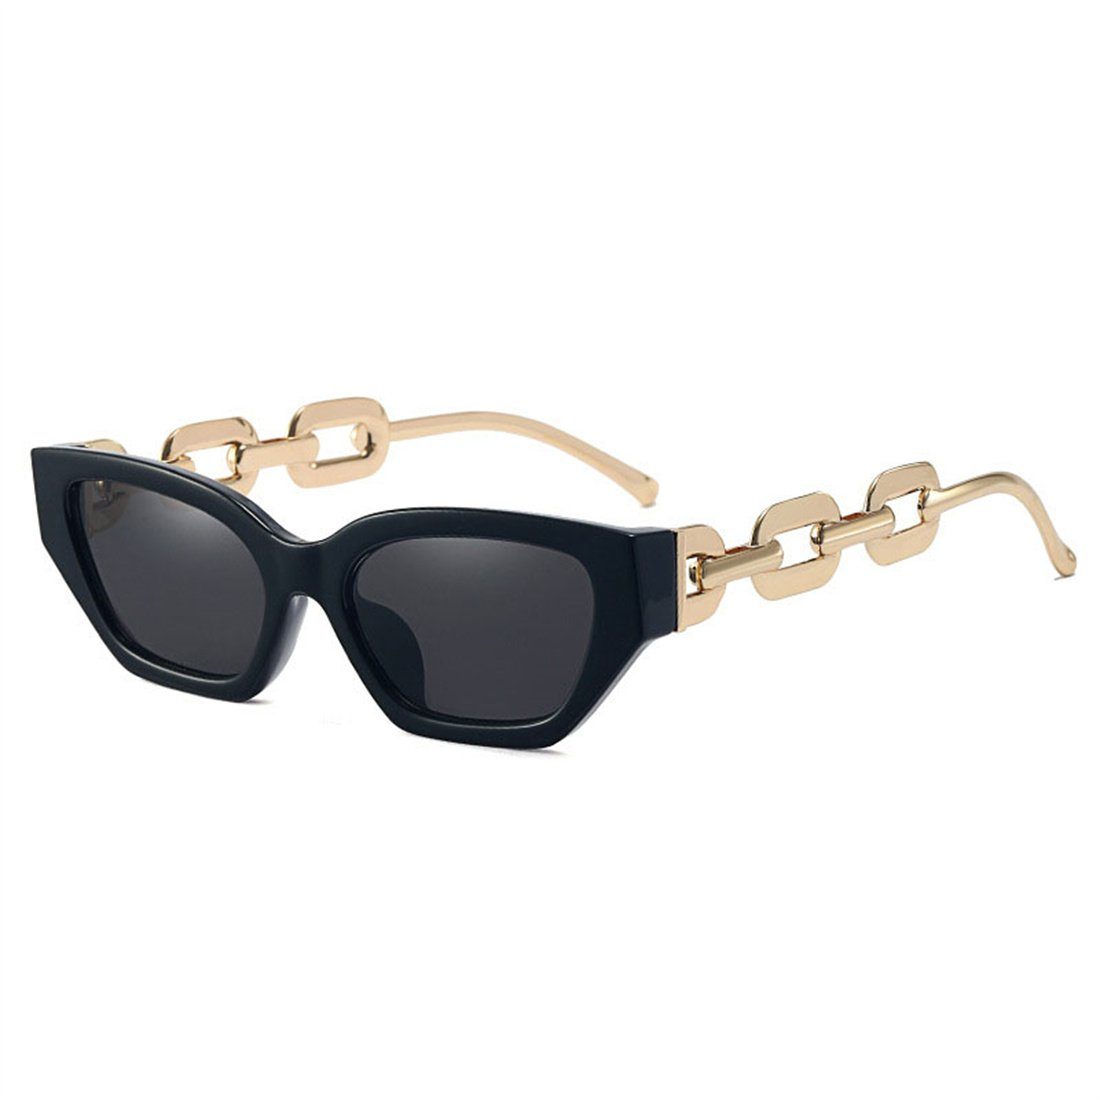 Sonnenbrille Rahmen Metall,Sonnenbrille DÖRÖY kleinem Damen-Sonnenbrille Trendige mit aus